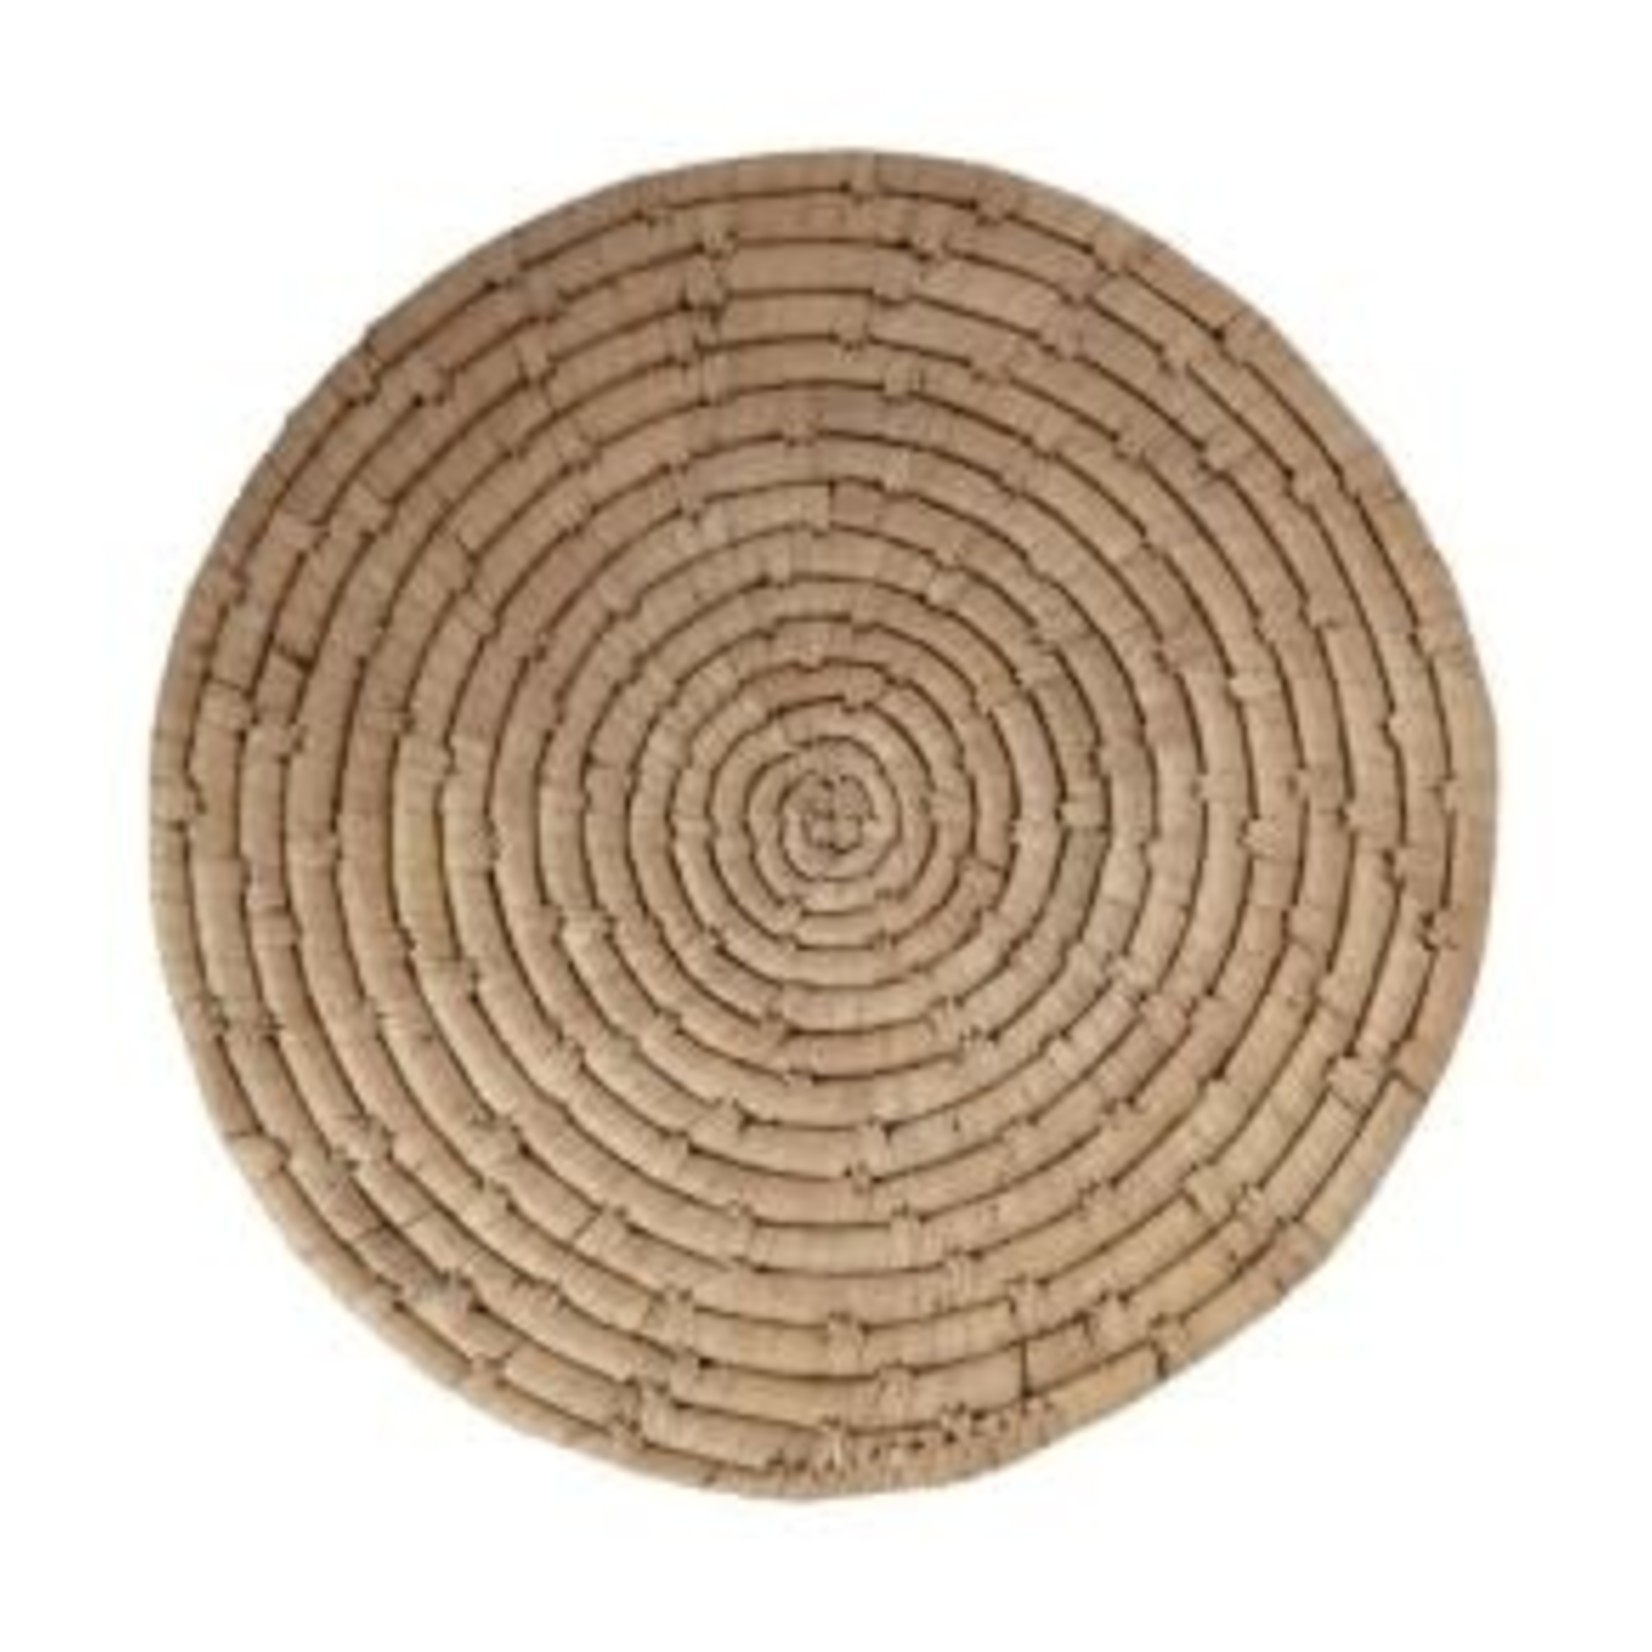 Hand-Woven Grass Placemat